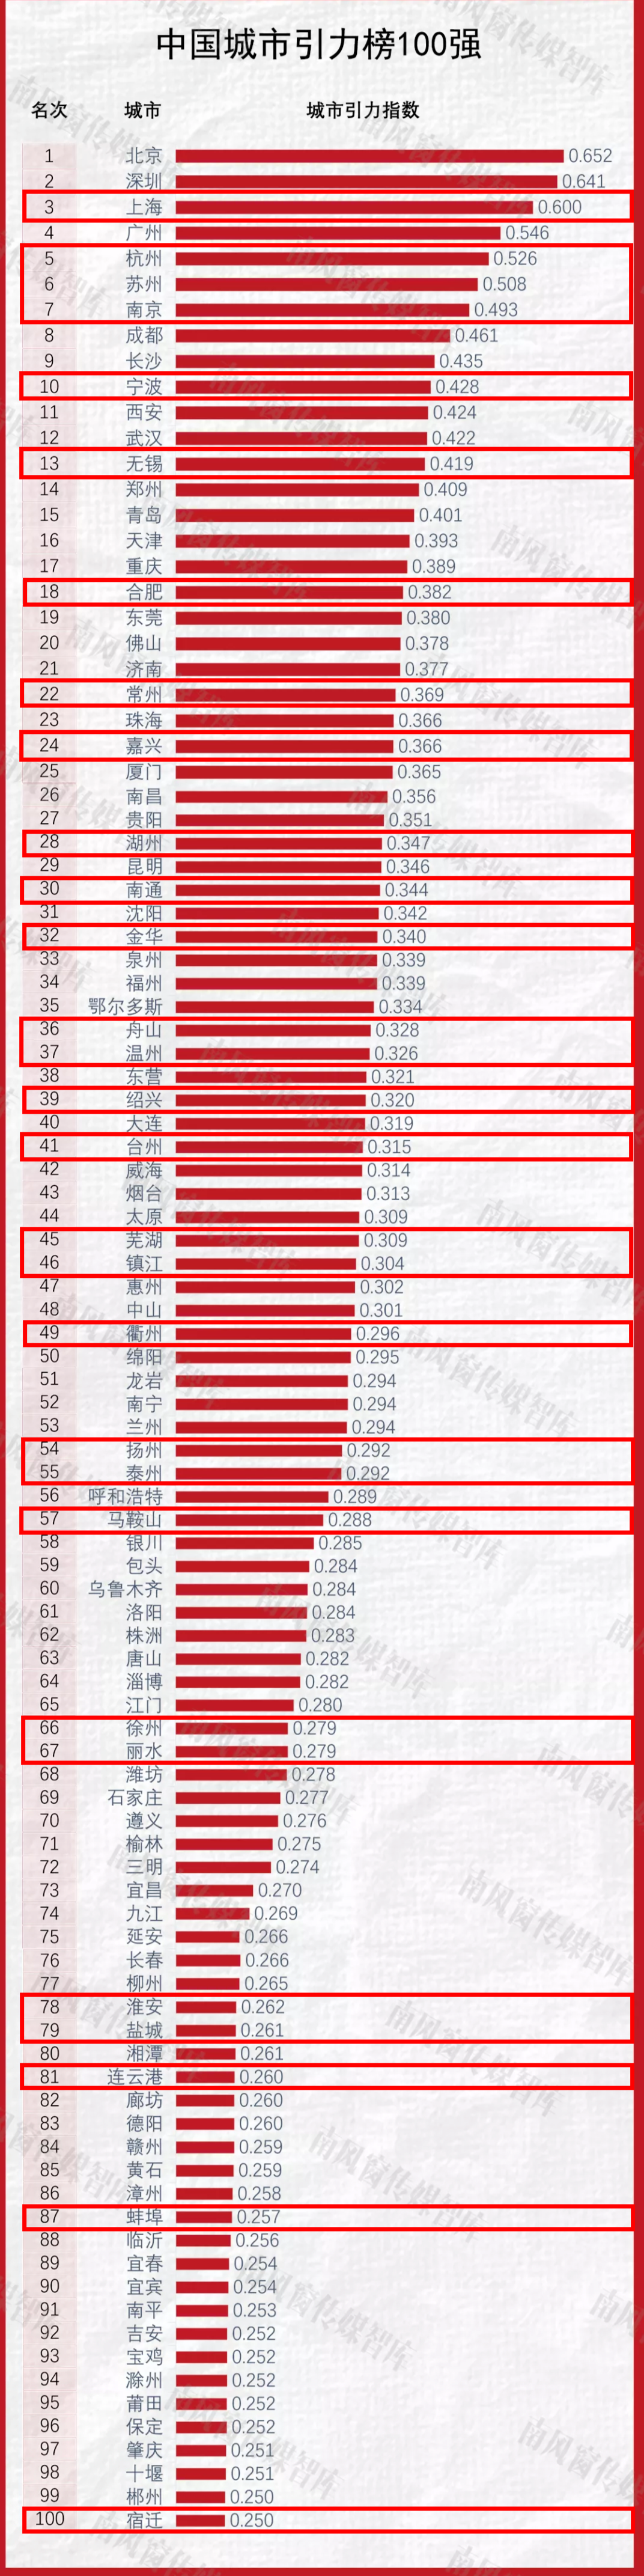 中国城市引力百强名单发布长三角这些城市上榜